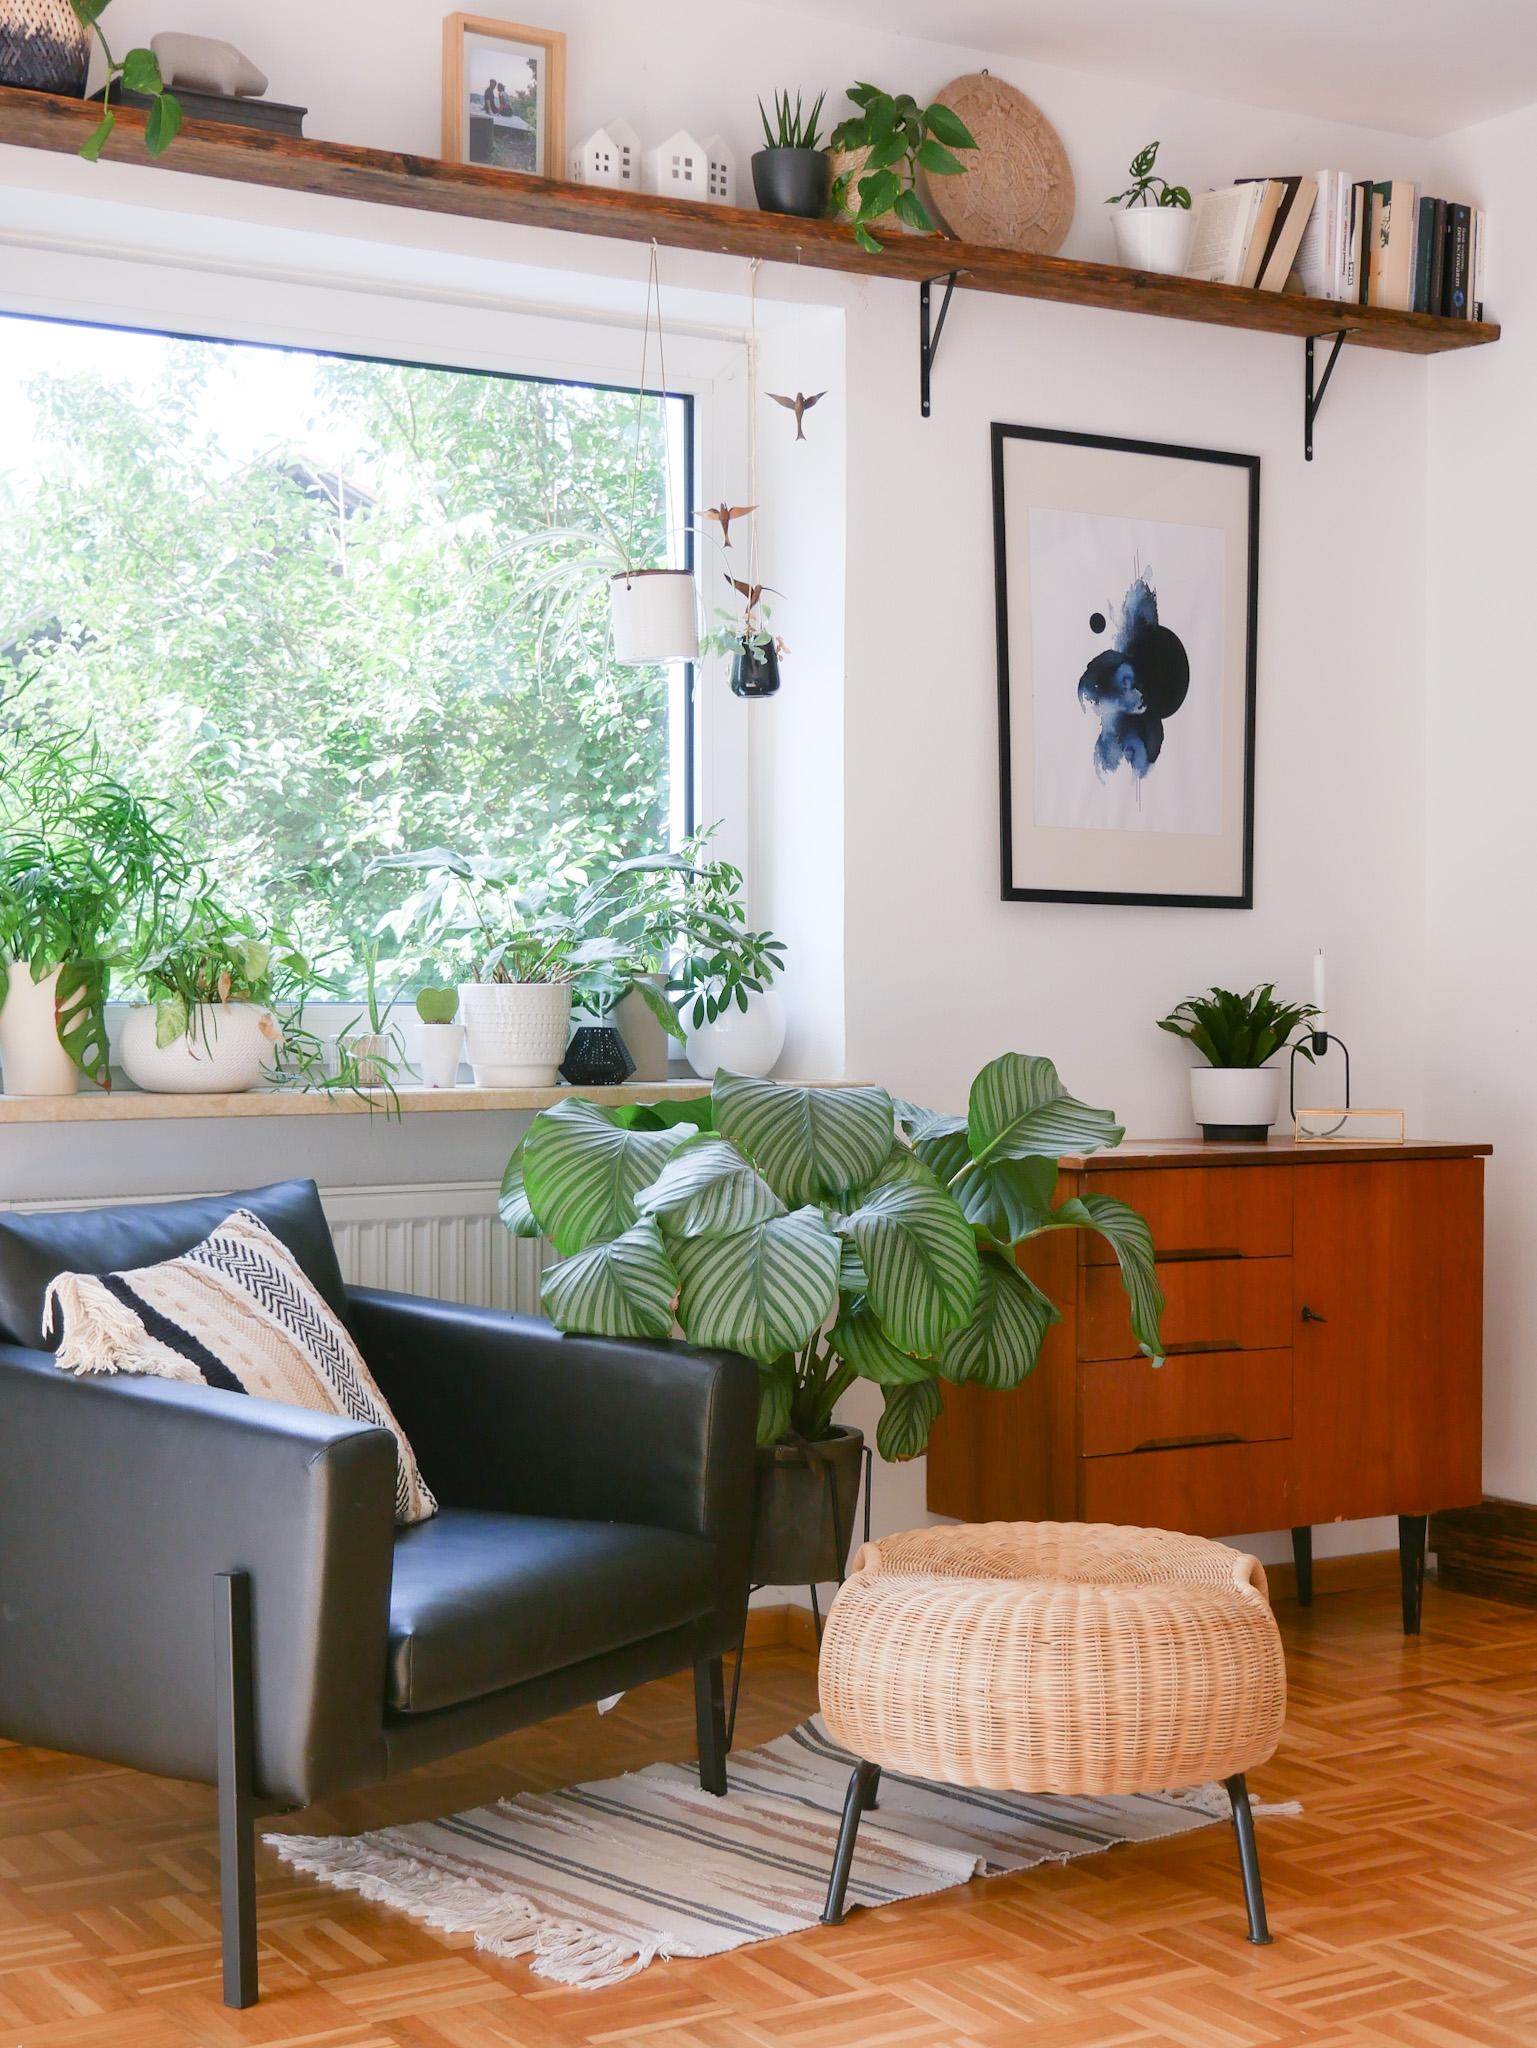 #wohnzimmer #scandi #hygge #livingroom #kunst #wandregal #pflanzenmuddi #ikea #ebaykleinanzeigen 